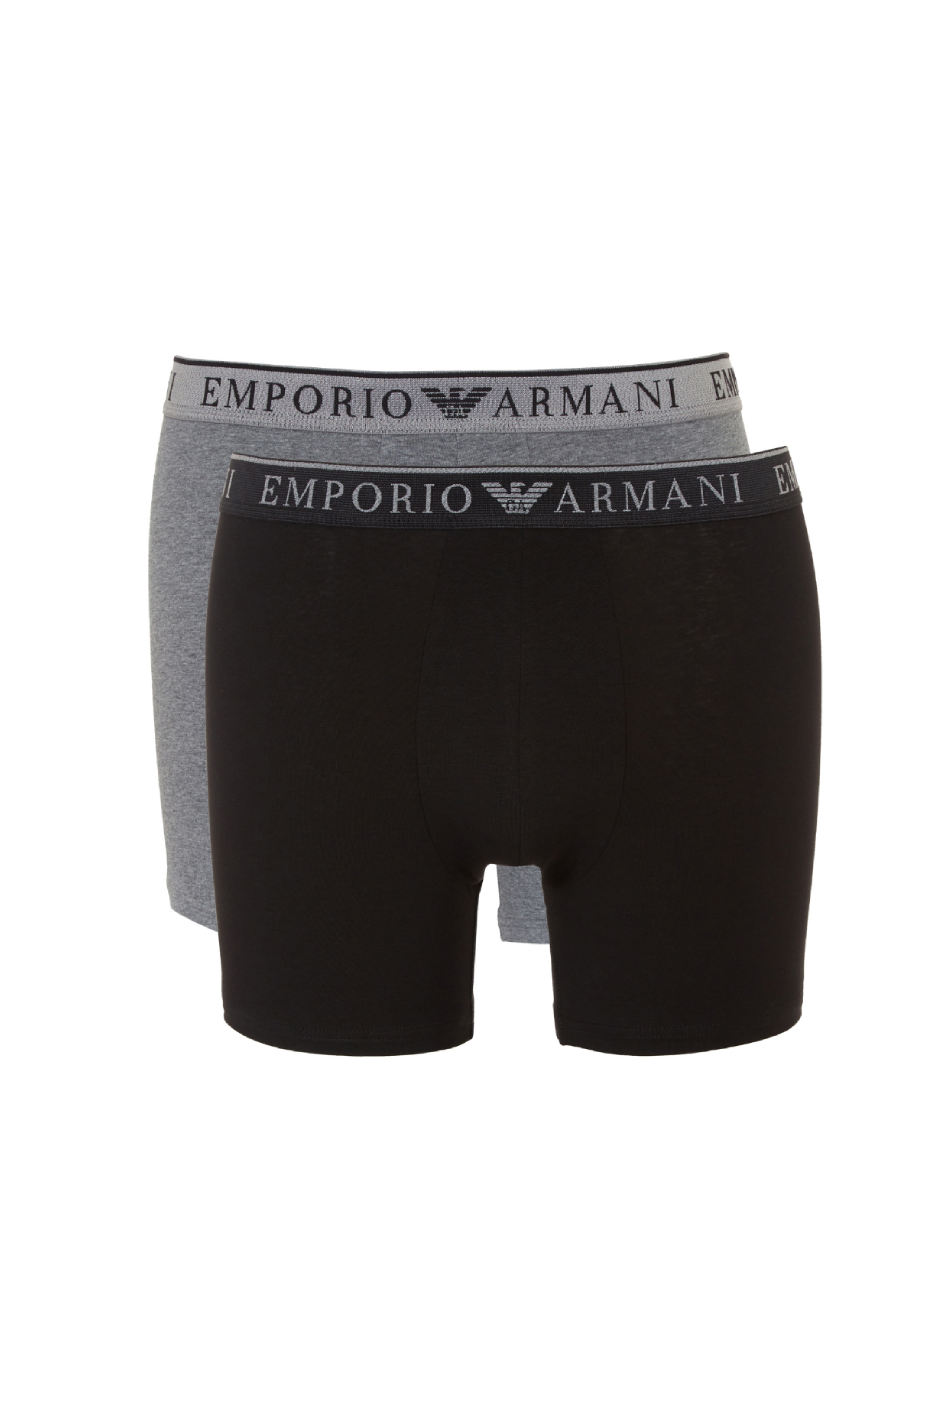 Emporio Armani 2 Pack Men's Stretch Cotton Boxer Brief